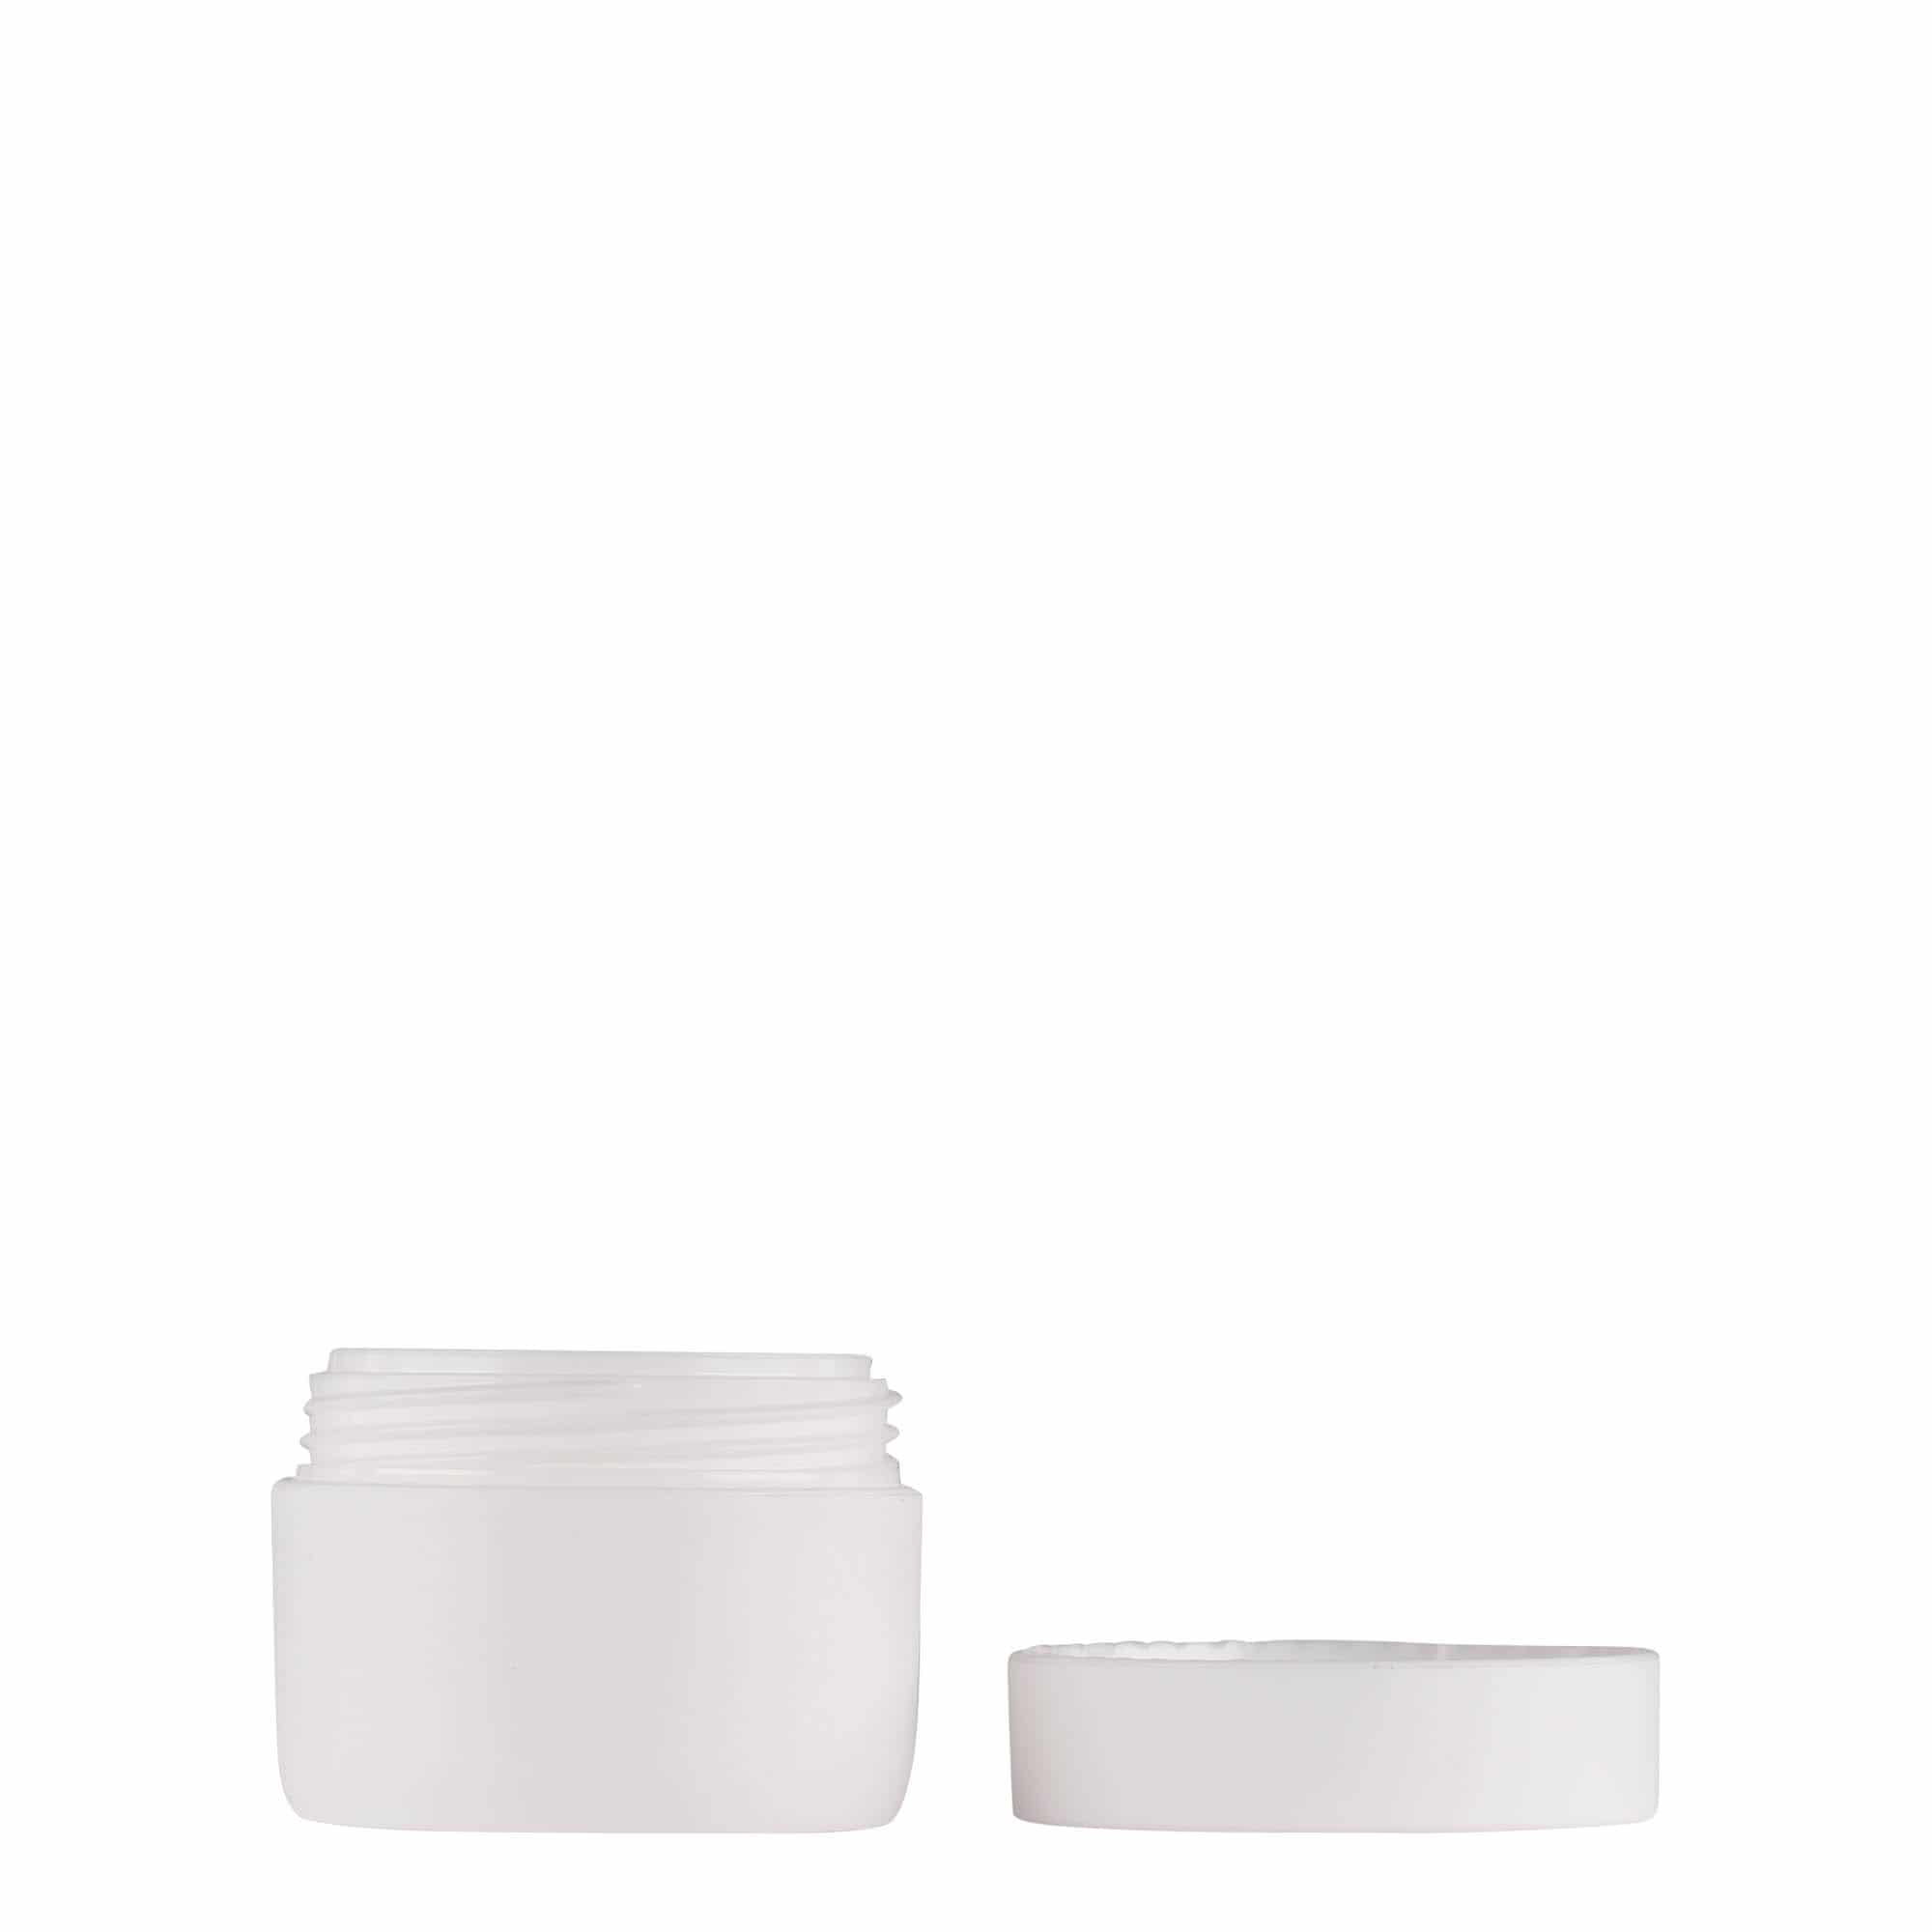 10 ml plastic jar 'Antonella', PP, white, closure: screw cap